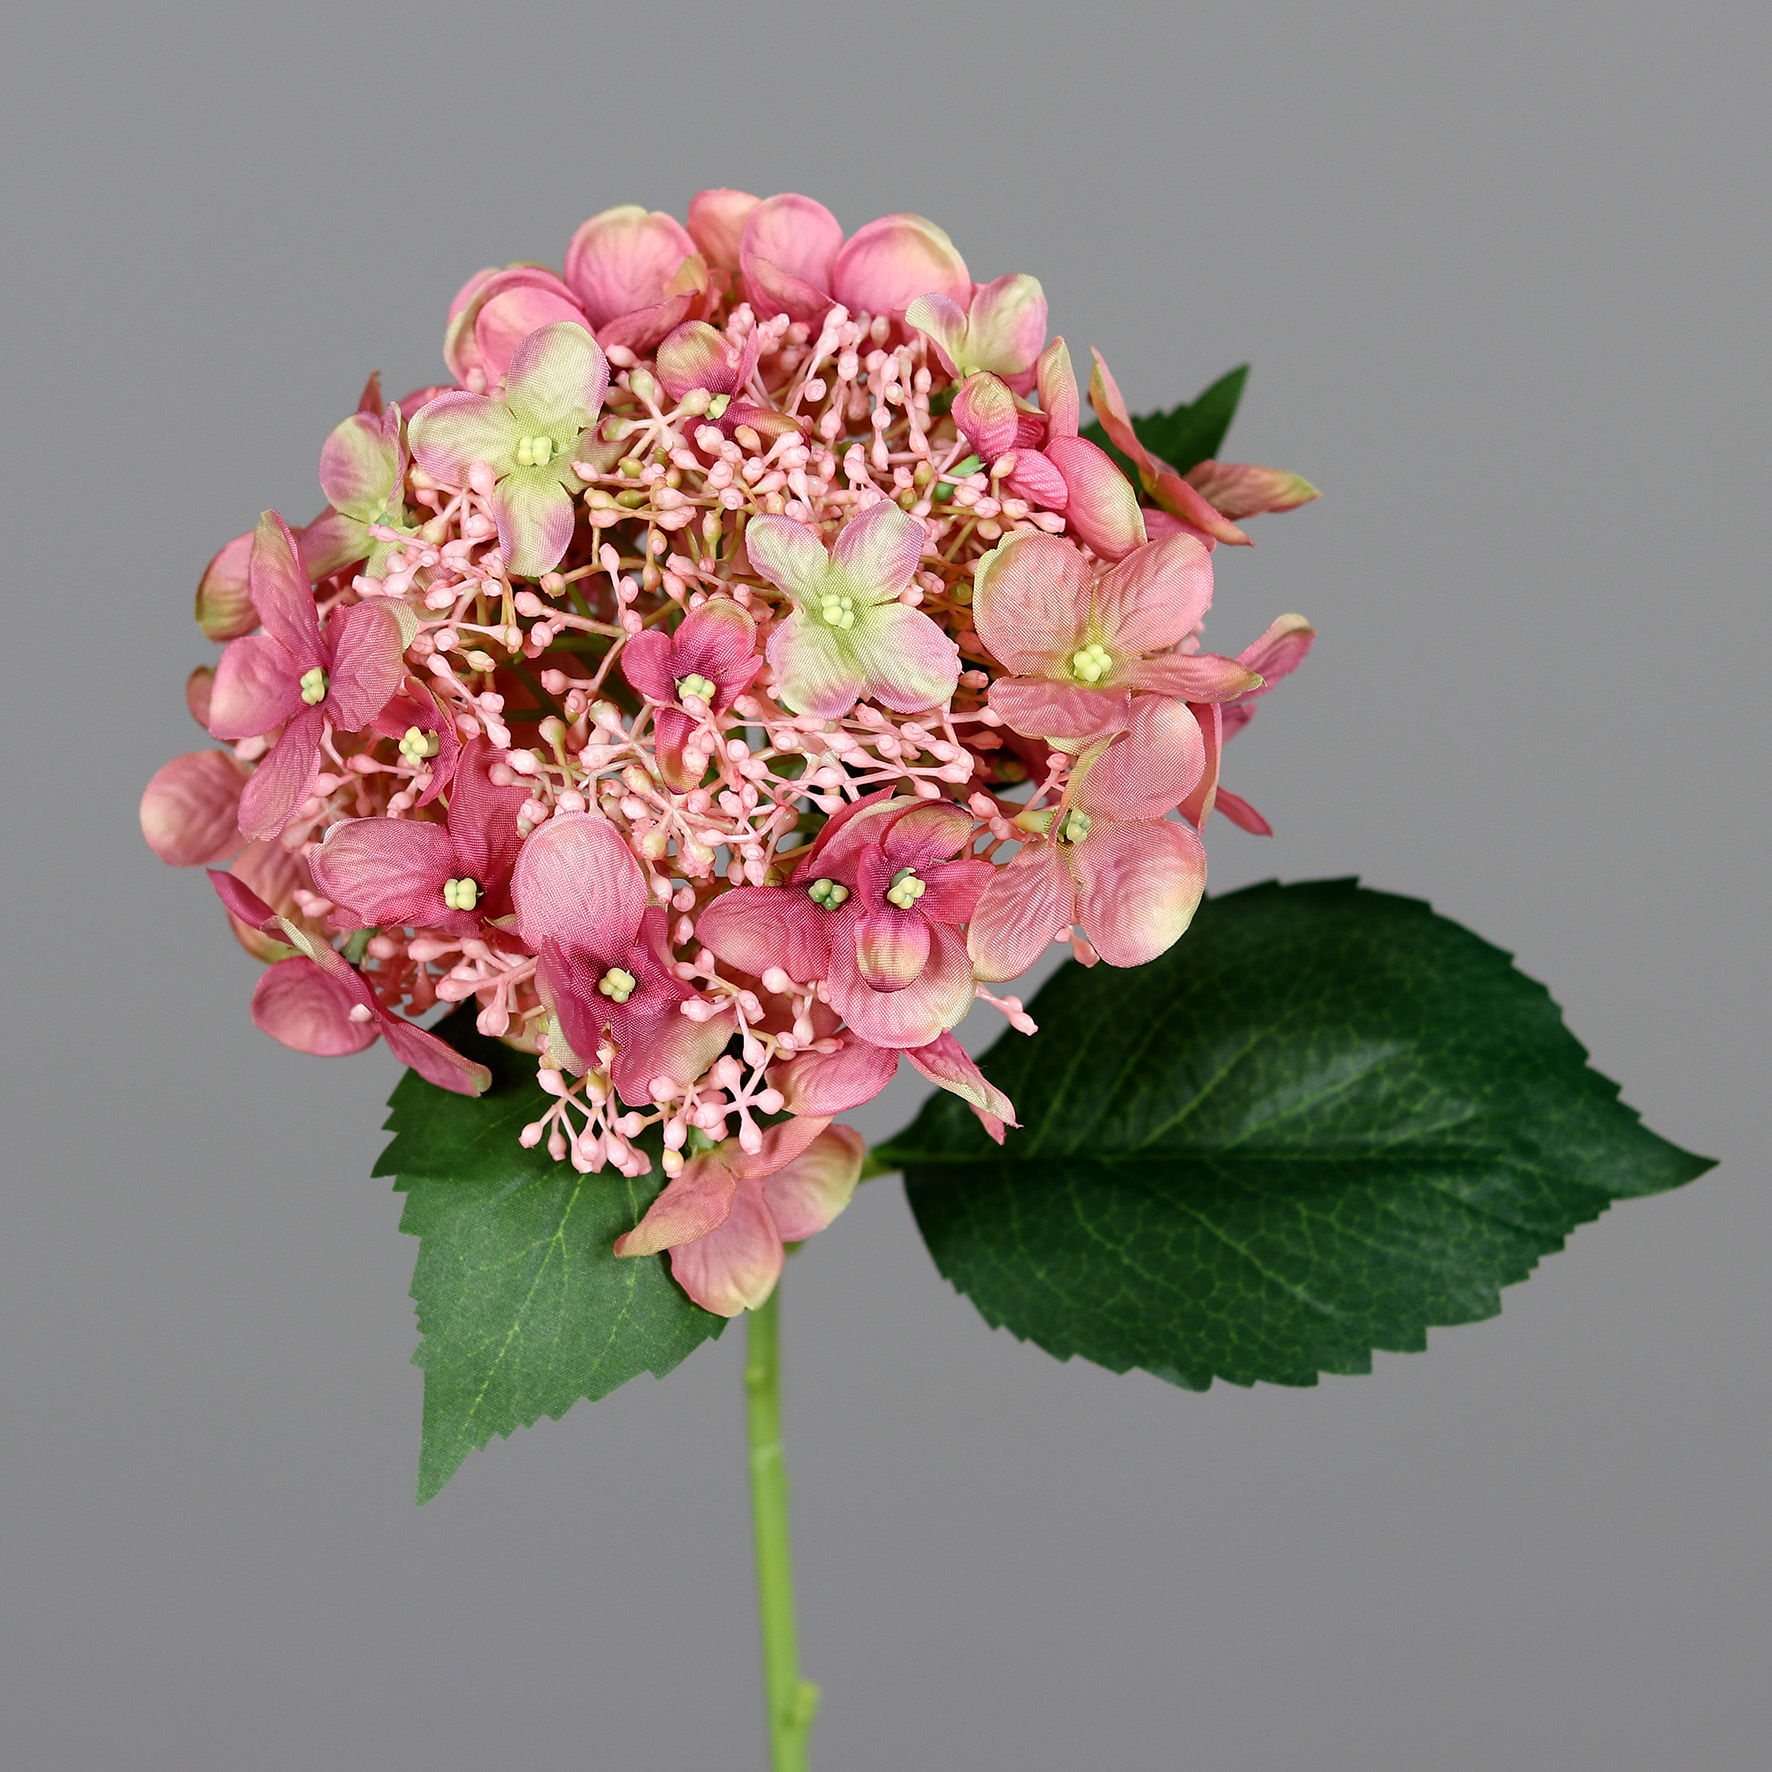 Sommer Hortensie 52cm rosa DP Blumen Kunstlbumen künstliche Hydrangea Hortensien